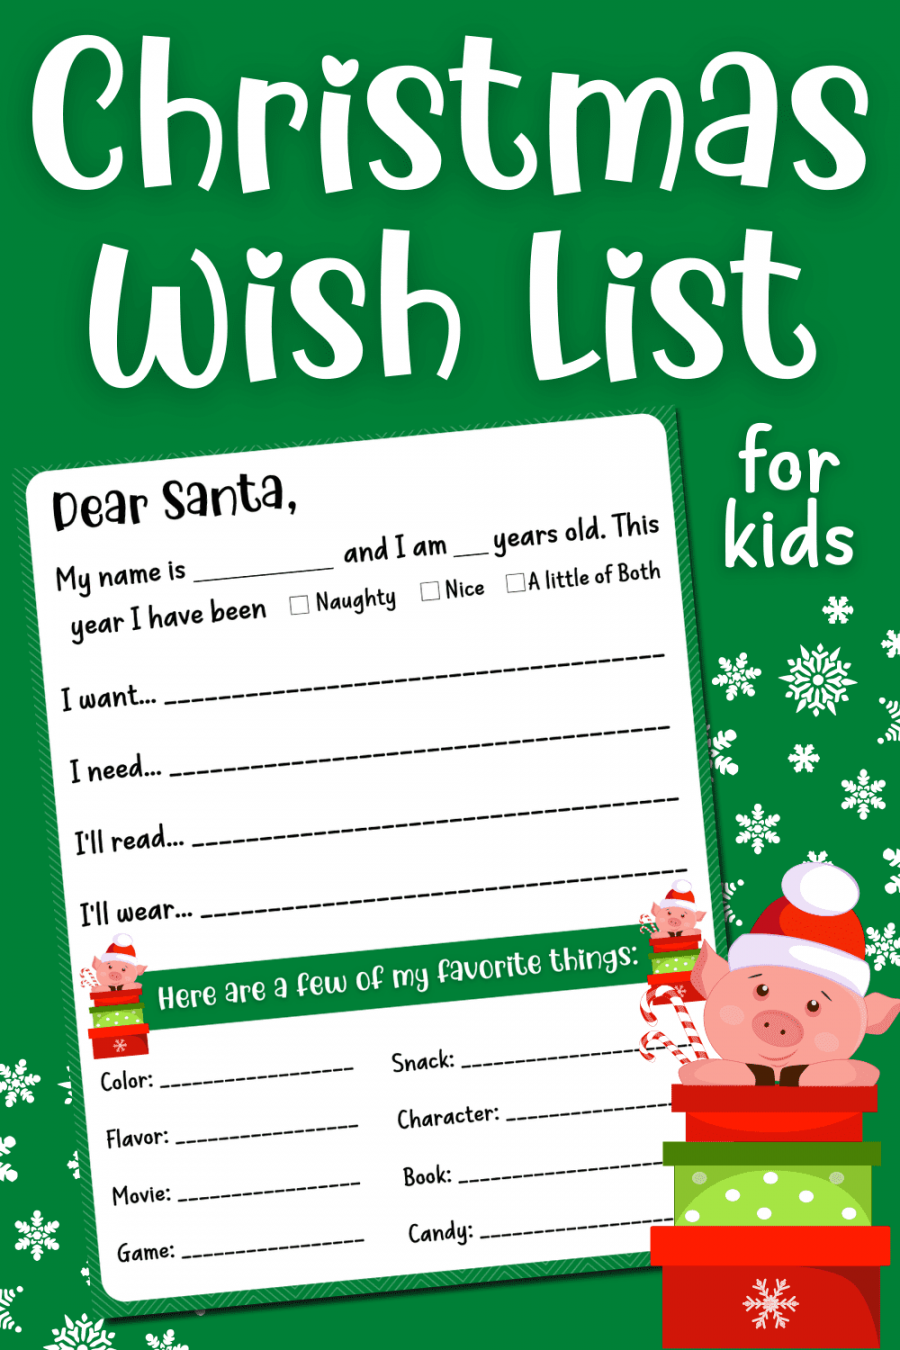 Free Printable Christmas Wish List - Printable - Free Printable Christmas Wish List for Kids